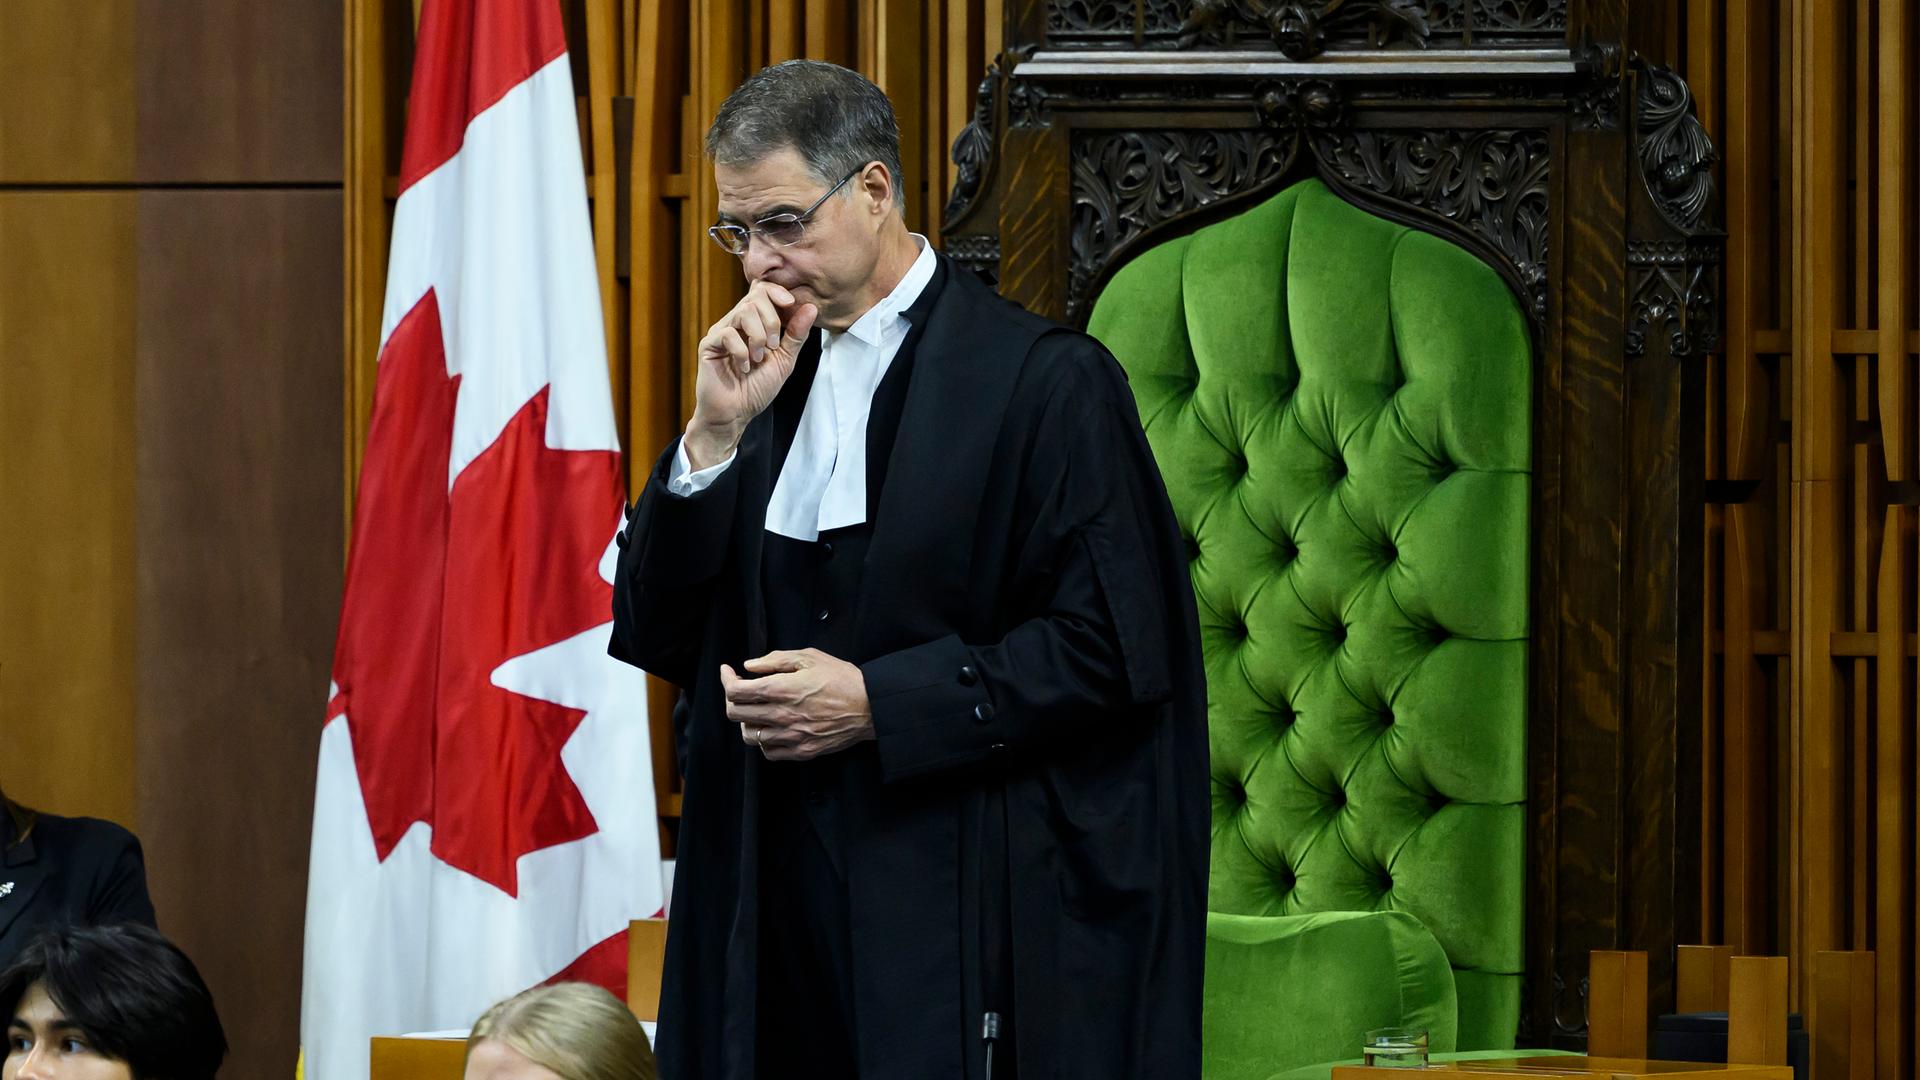 Kanadas inzwischen zurückgetretener Parlamentspräsident Anthony Rota in seiner schwarzen Amtsrobe vor einem gepolsterten grünen Sessel und der kanadischen Flagge